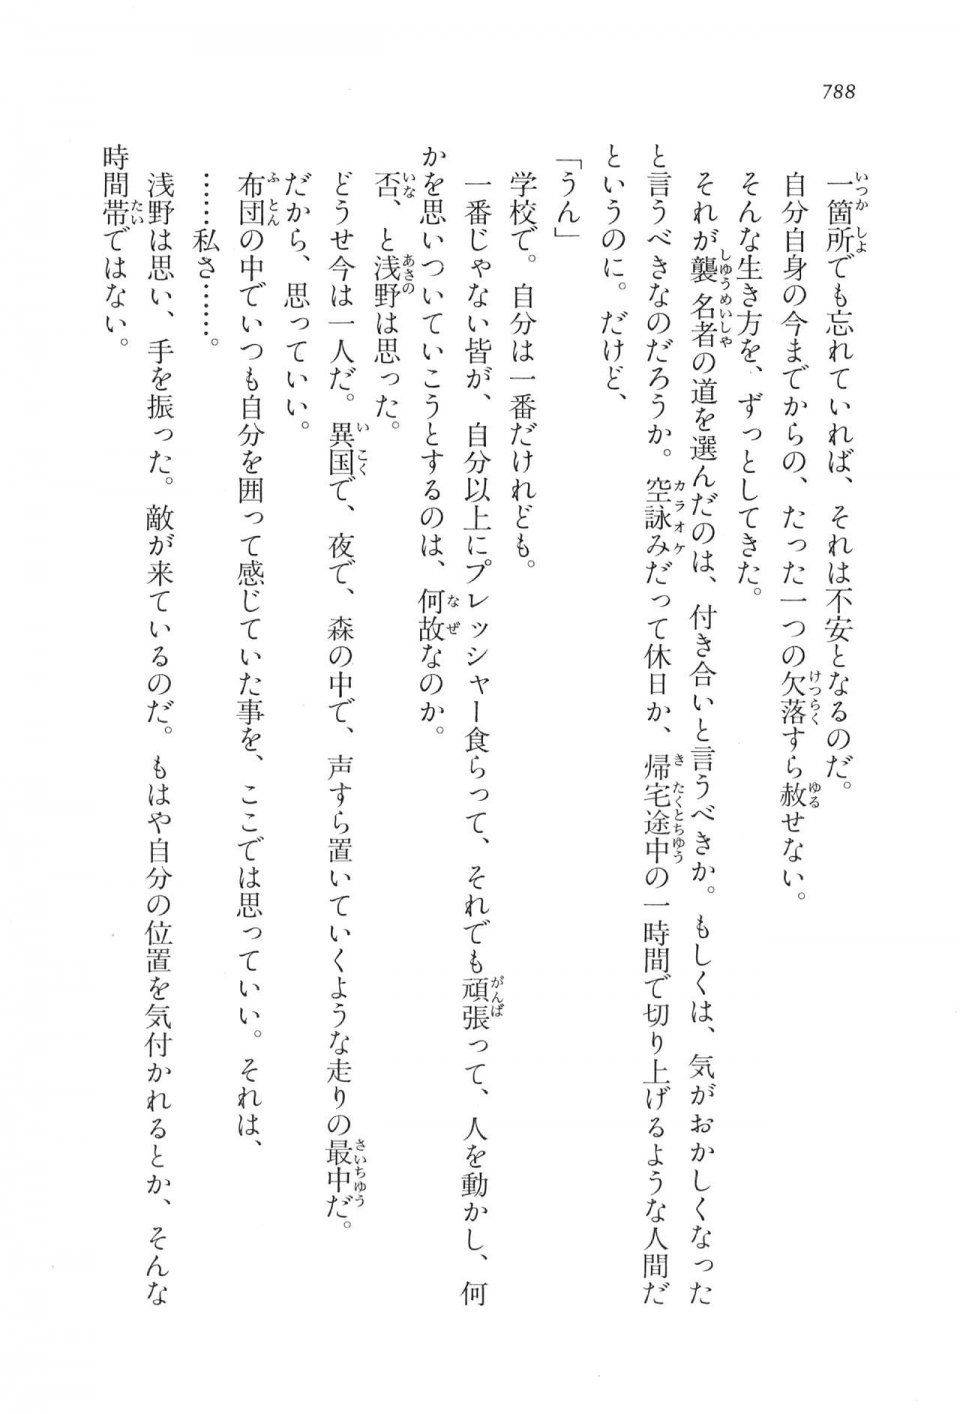 Kyoukai Senjou no Horizon LN Vol 17(7B) - Photo #790